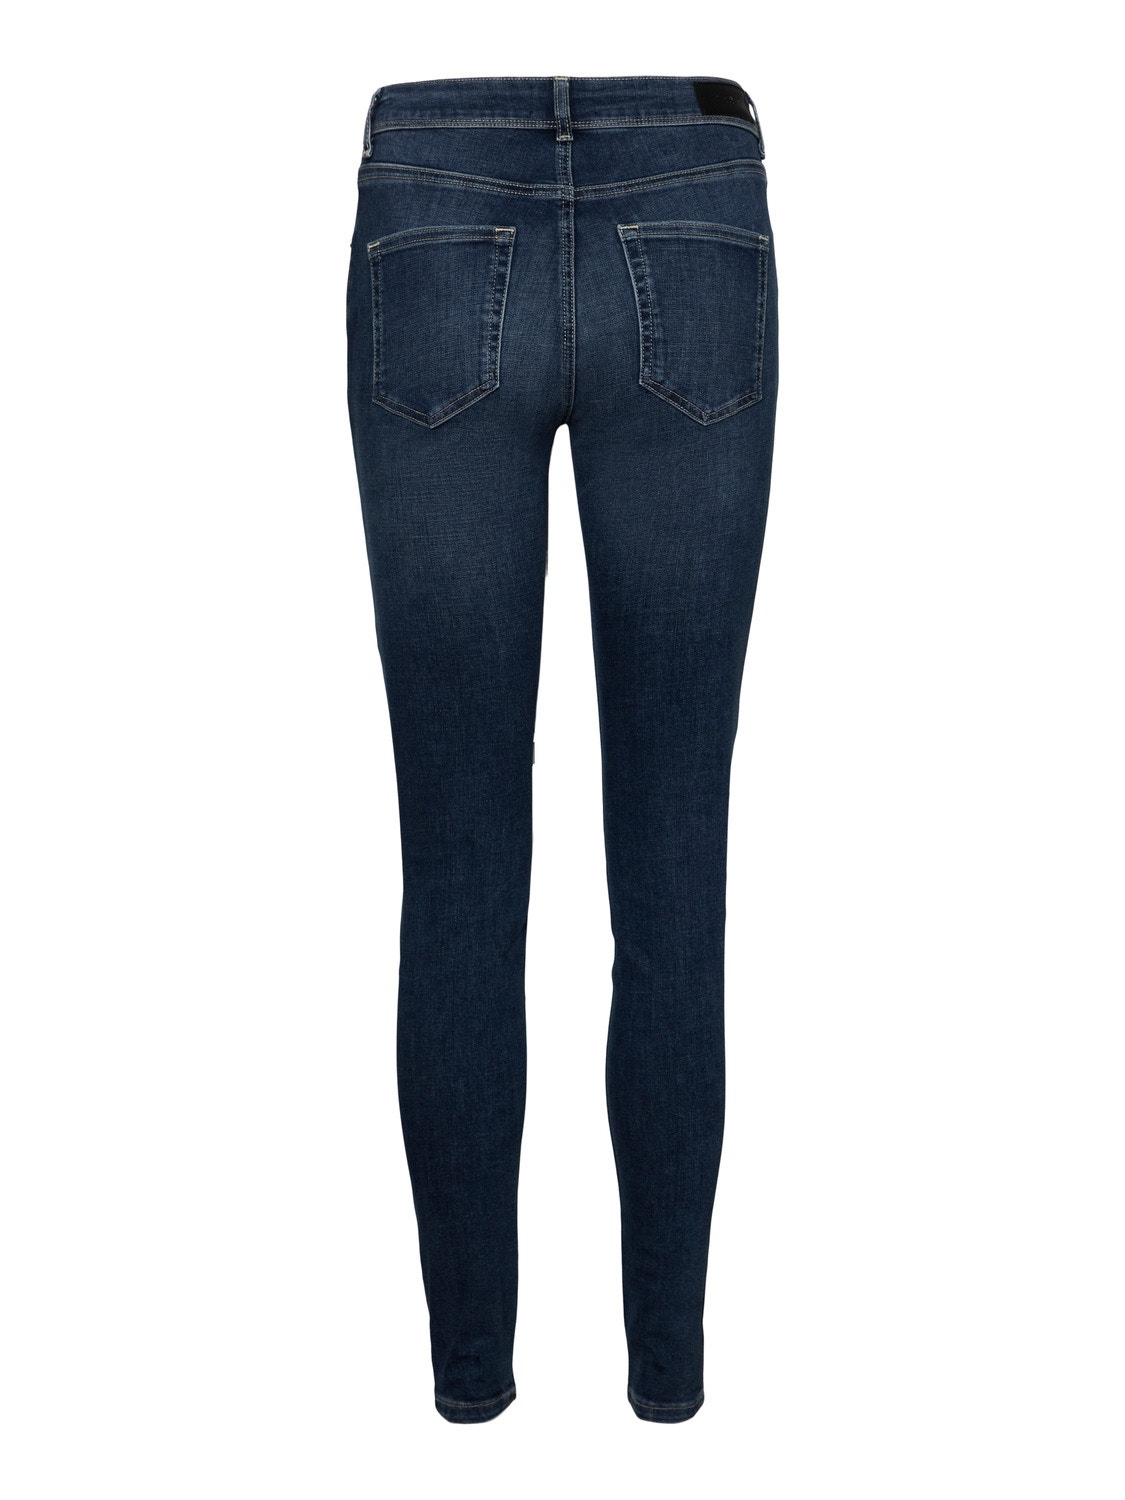 Vero Moda VMLUX Mid Rise Slim Fit Jeans -Medium Blue Denim - 10291174